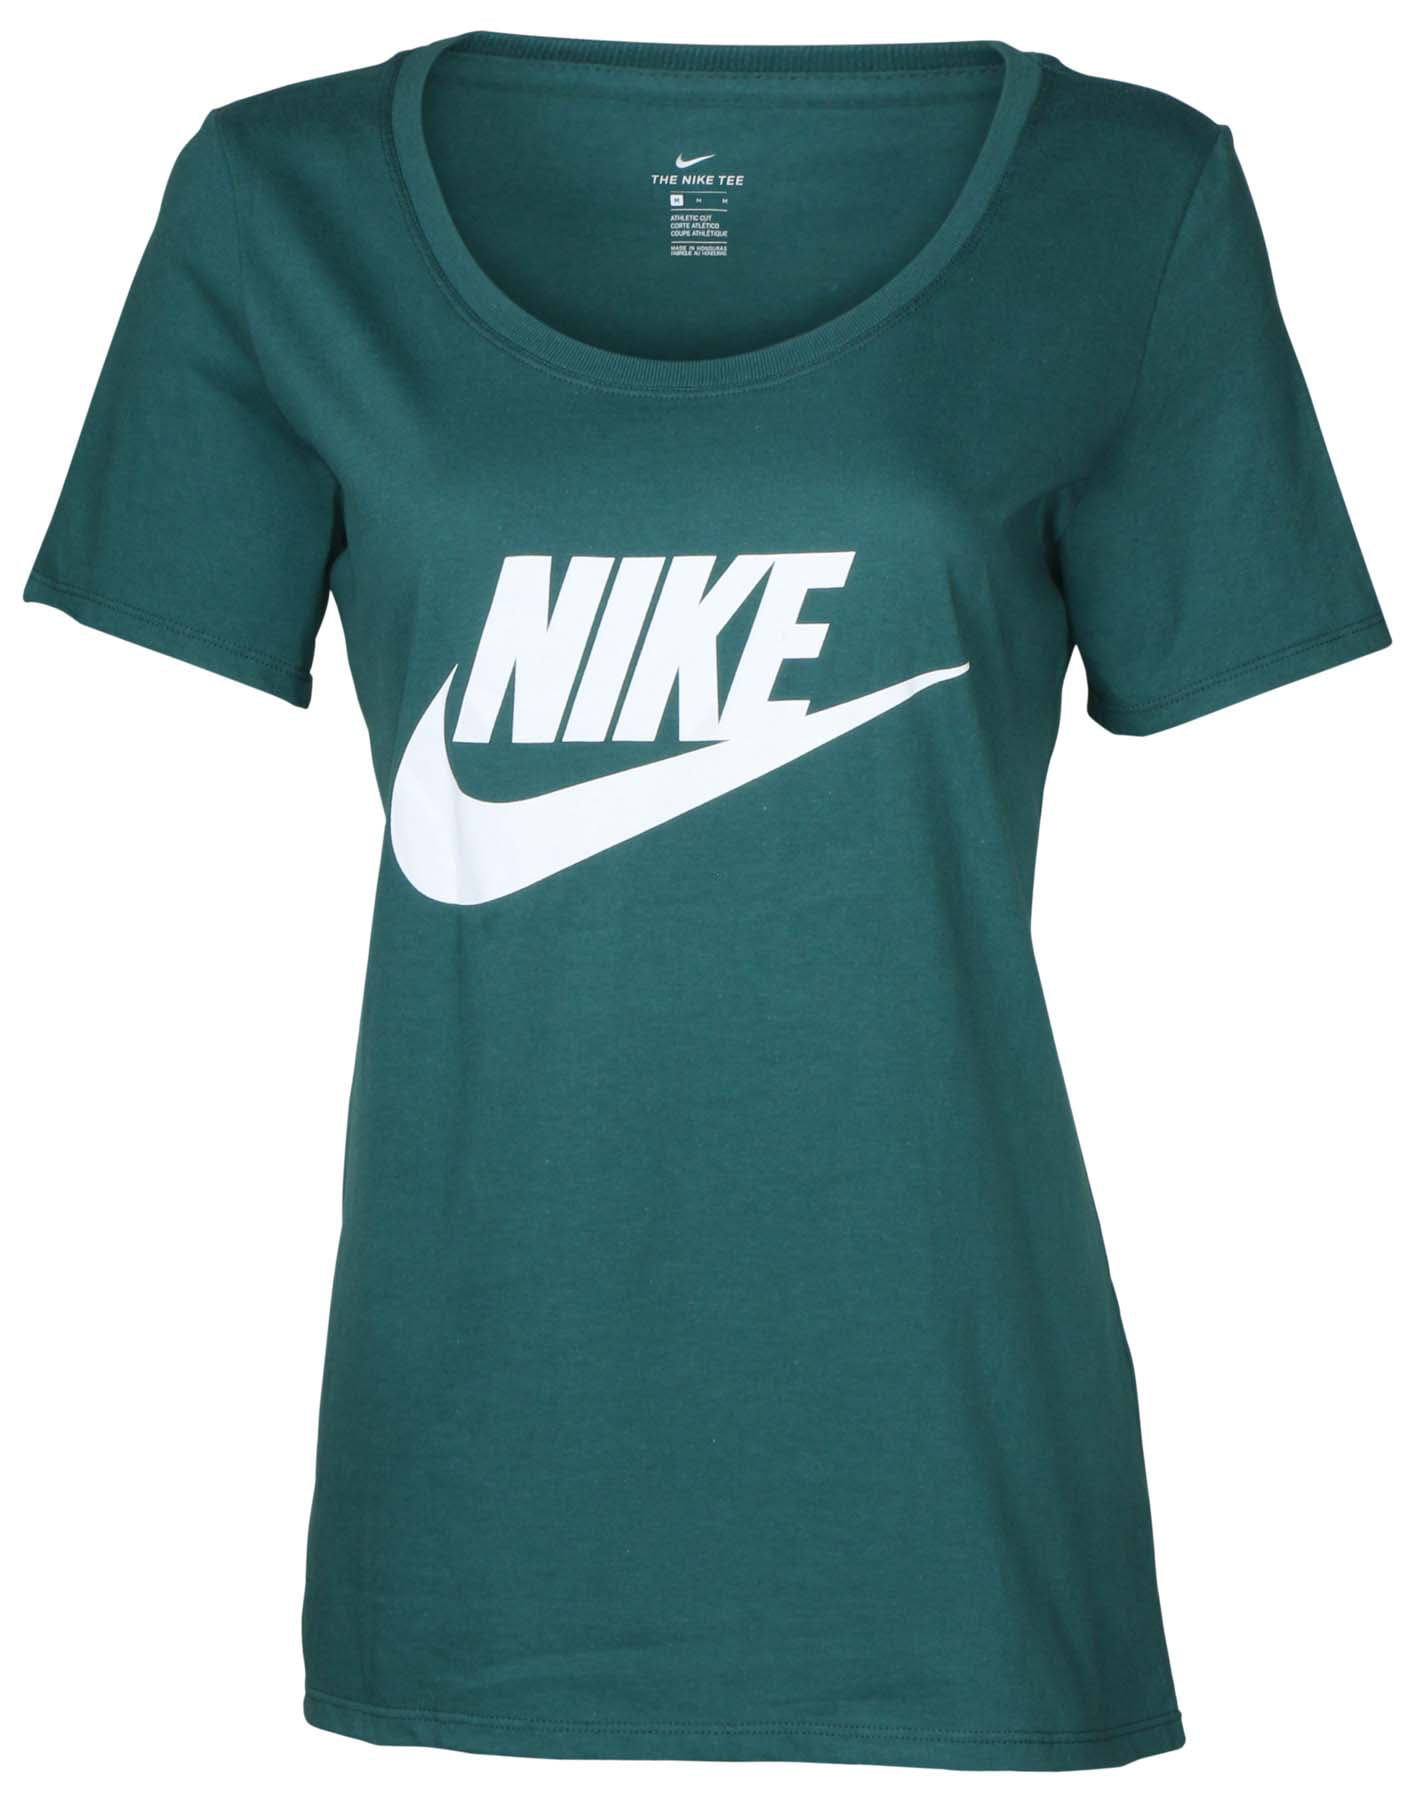 Nike - Nike Women's Basic Futura Swoosh T-Shirt-Green - Walmart.com ...